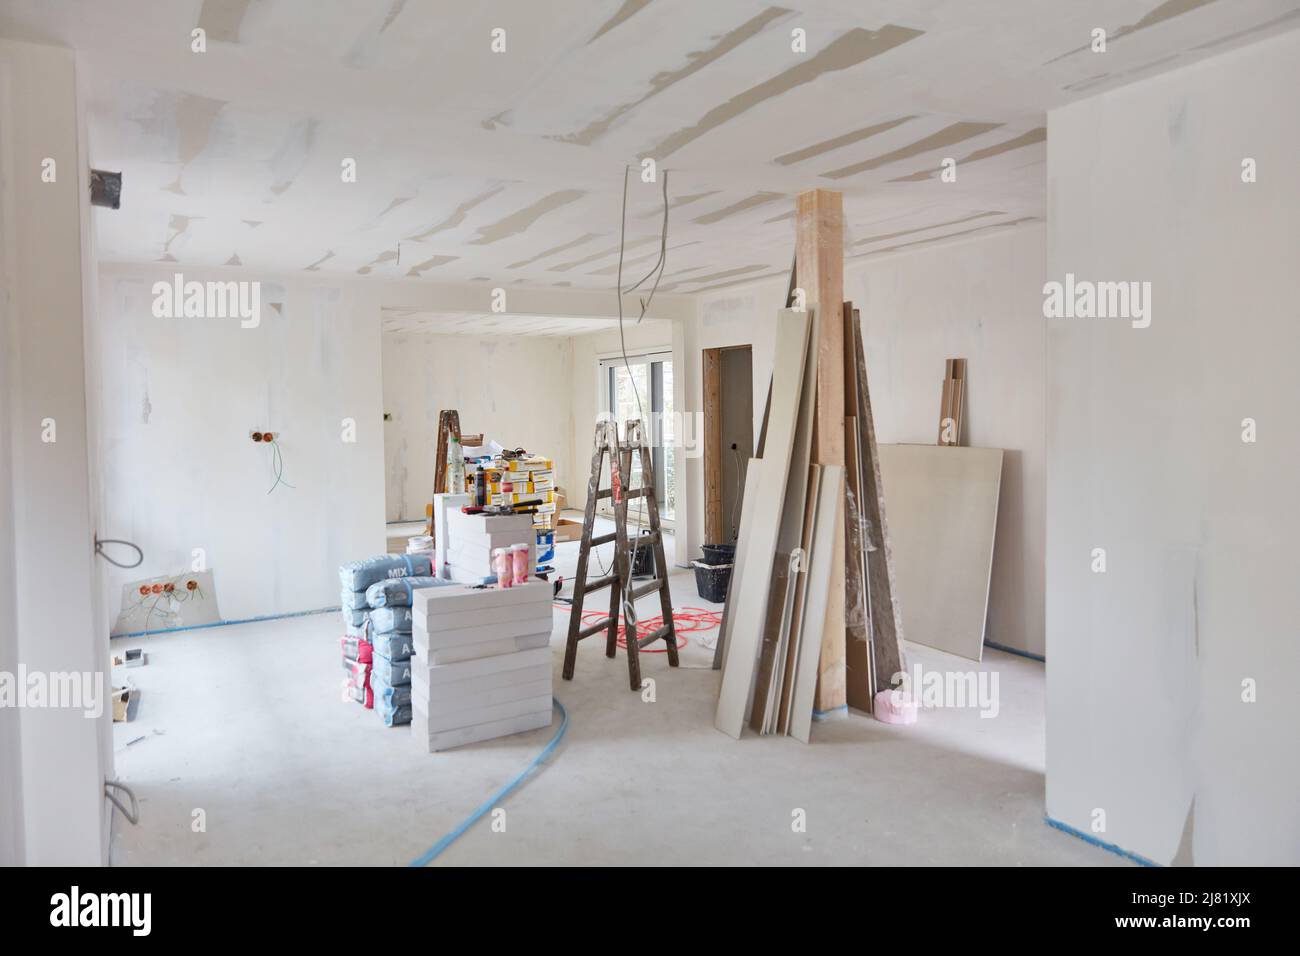 Baumaterialien und Werkzeuge für die Innendekoration beim Bau eines Hauses in einem großen Raum Stockfoto